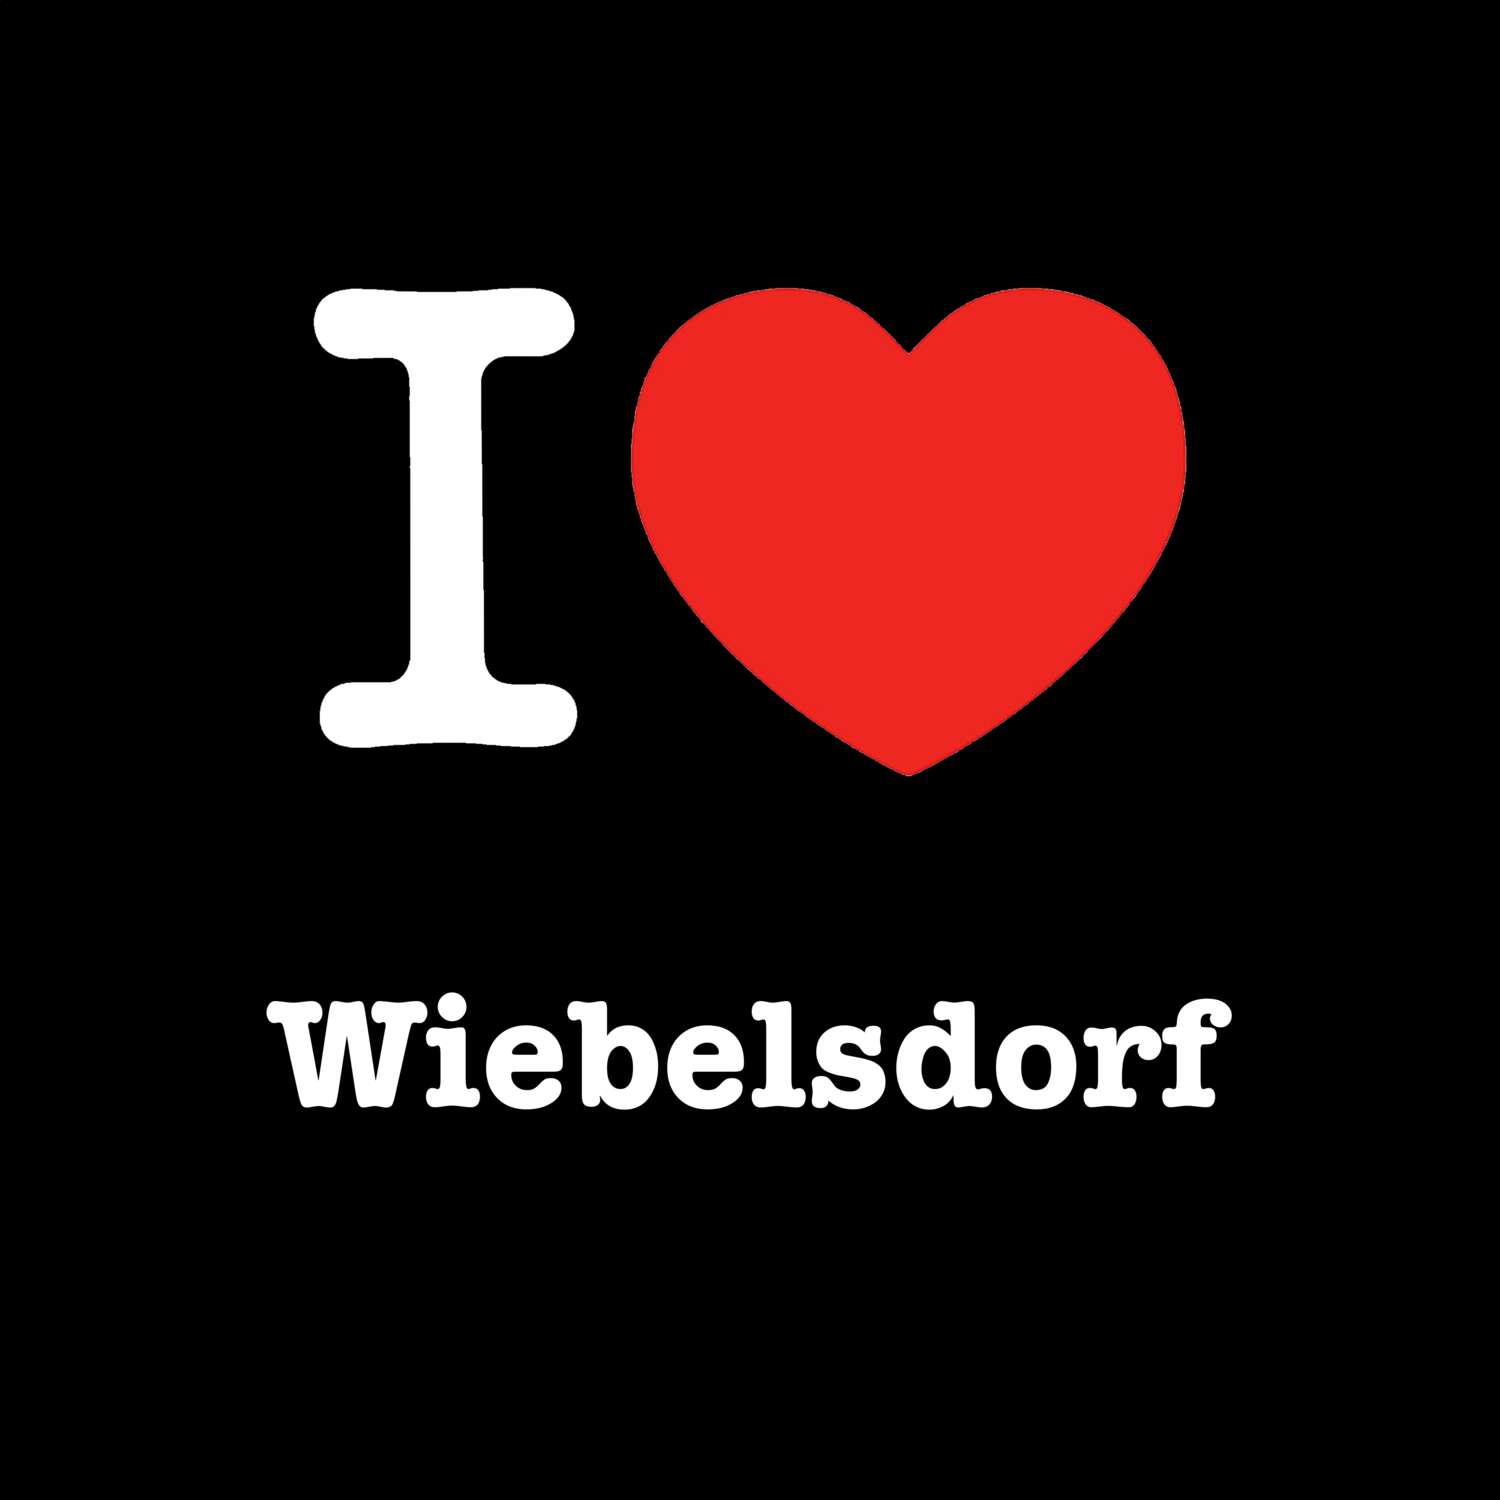 Wiebelsdorf T-Shirt »I love«